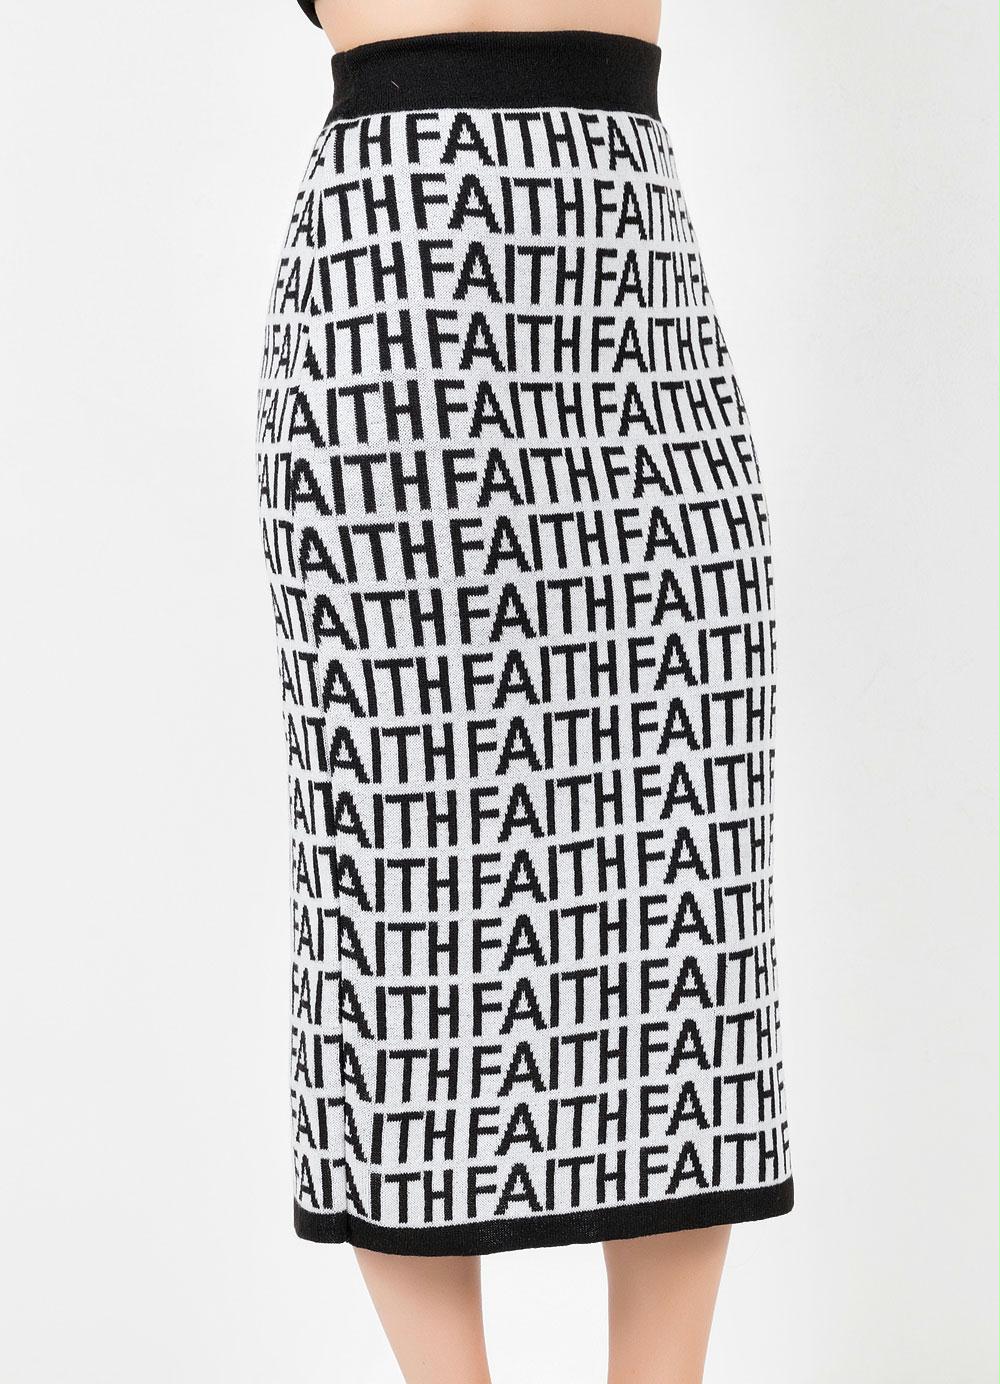 Saia Letering Faith em Áquila Tauheny Store | Moda Evangélica